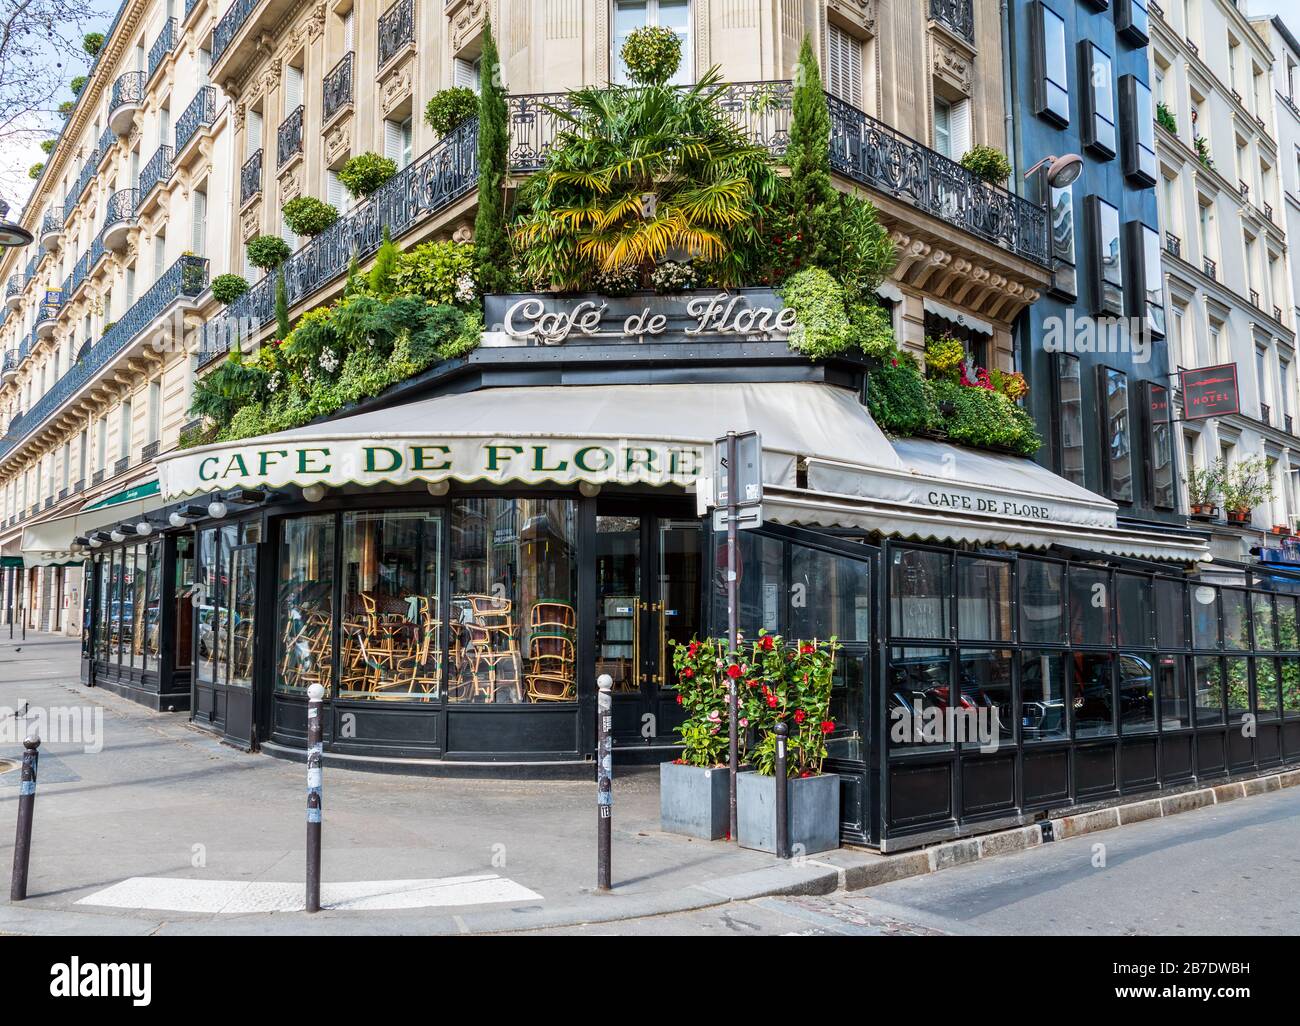 Cafe de Fiore chiuso a causa dell'epidemia di Coronavirus - Parigi, Francia Foto Stock